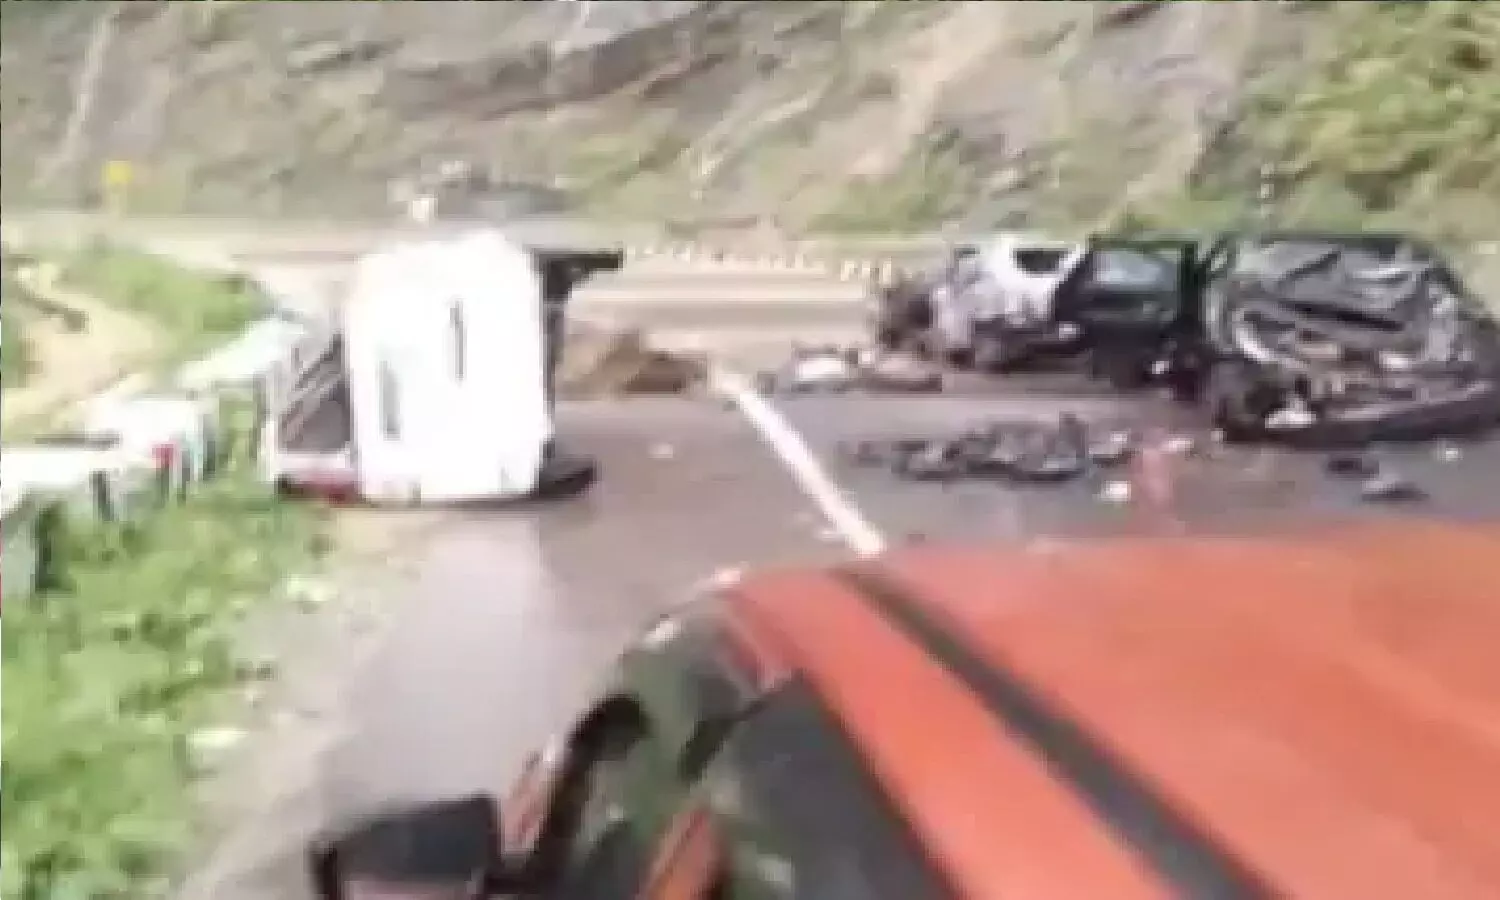 नगालैंड के कोहिमा-दीमापुर हाईवे में कार पर गिरी चट्टान का वीडियो वायरल! तीन गाड़ियां चपट गईं, 2 लोगों की मौत